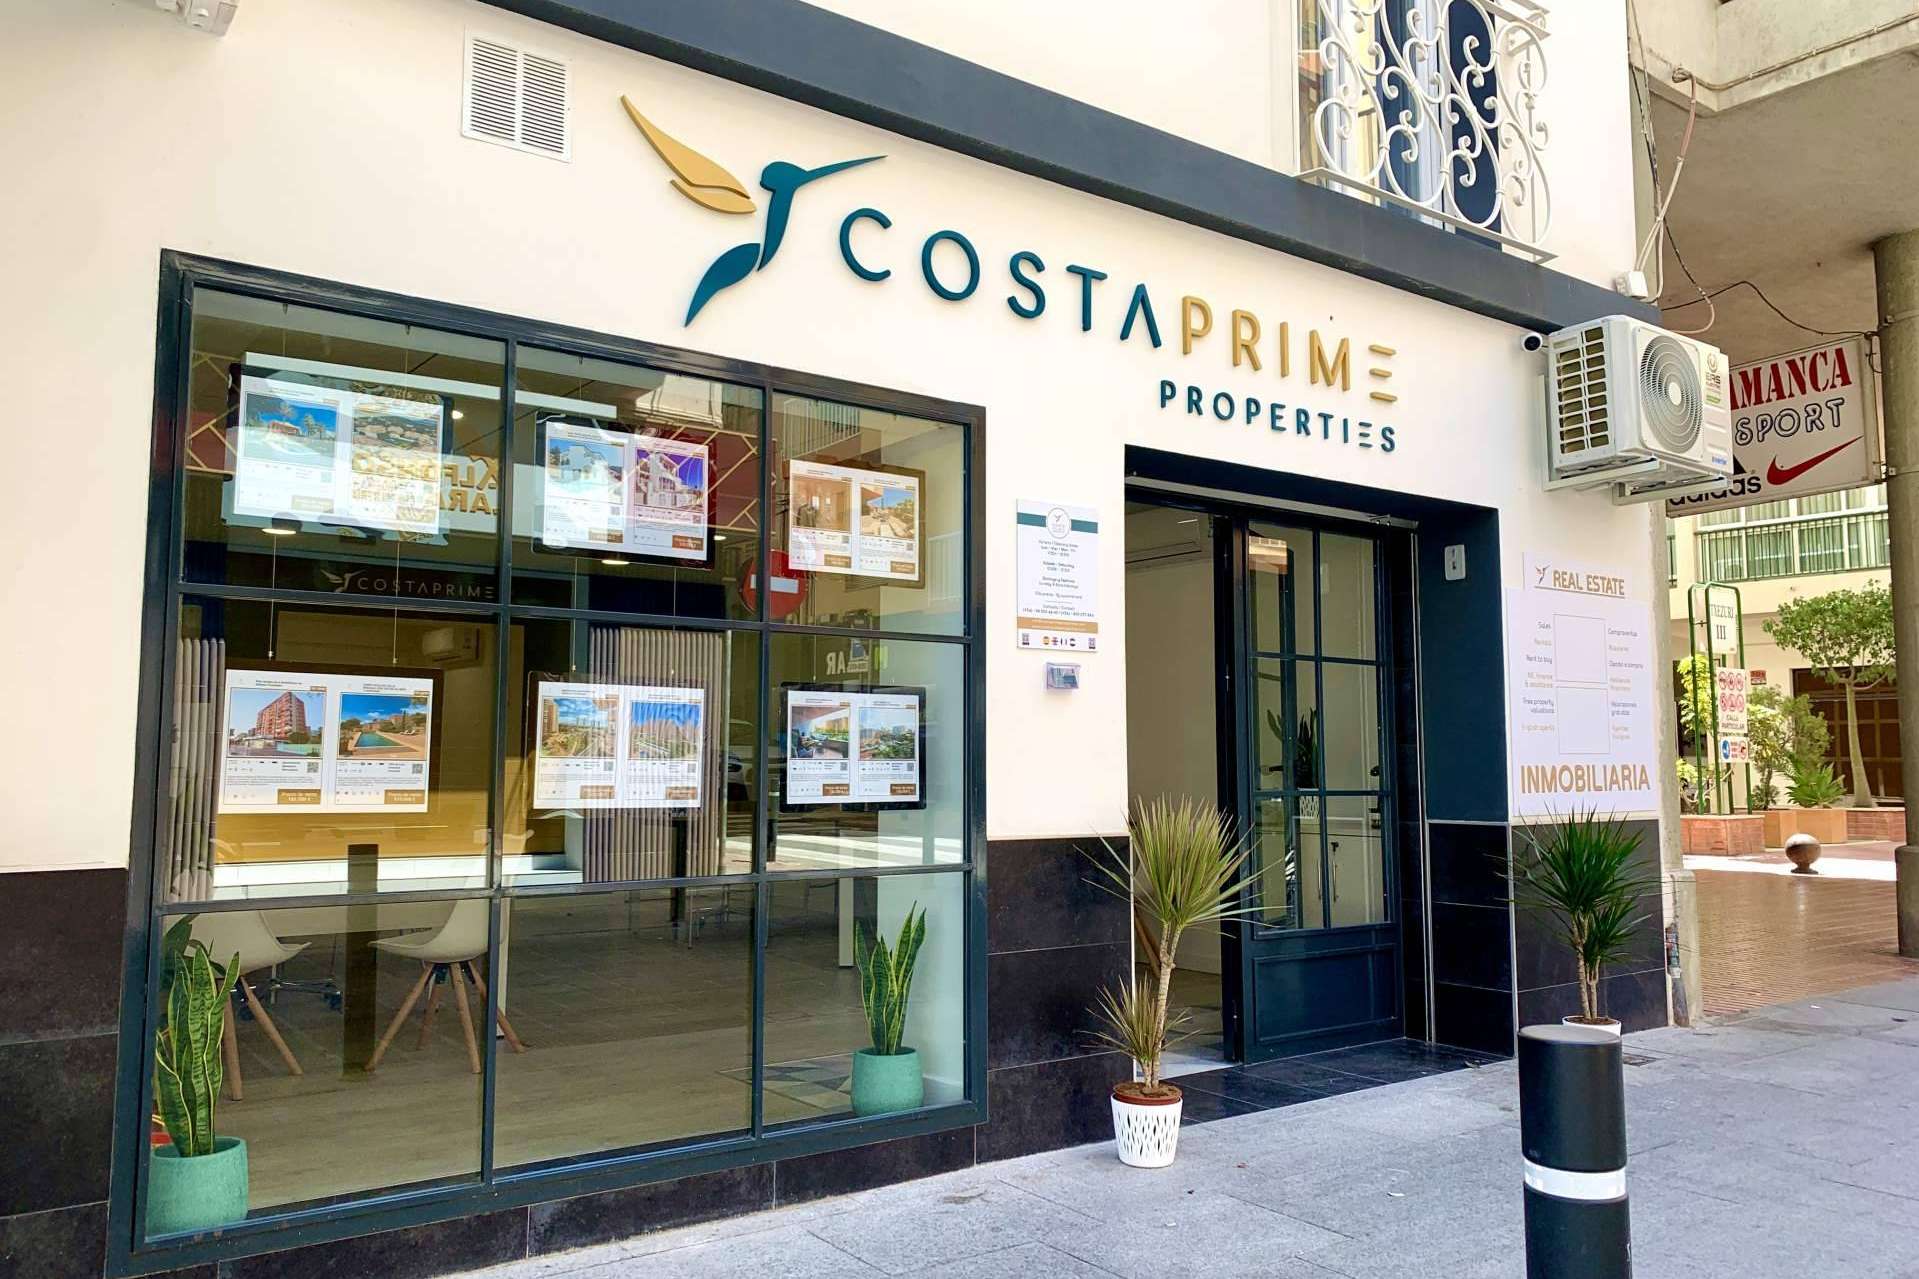 Costa Prime Properties valora el precio de mercado actual de una propiedad